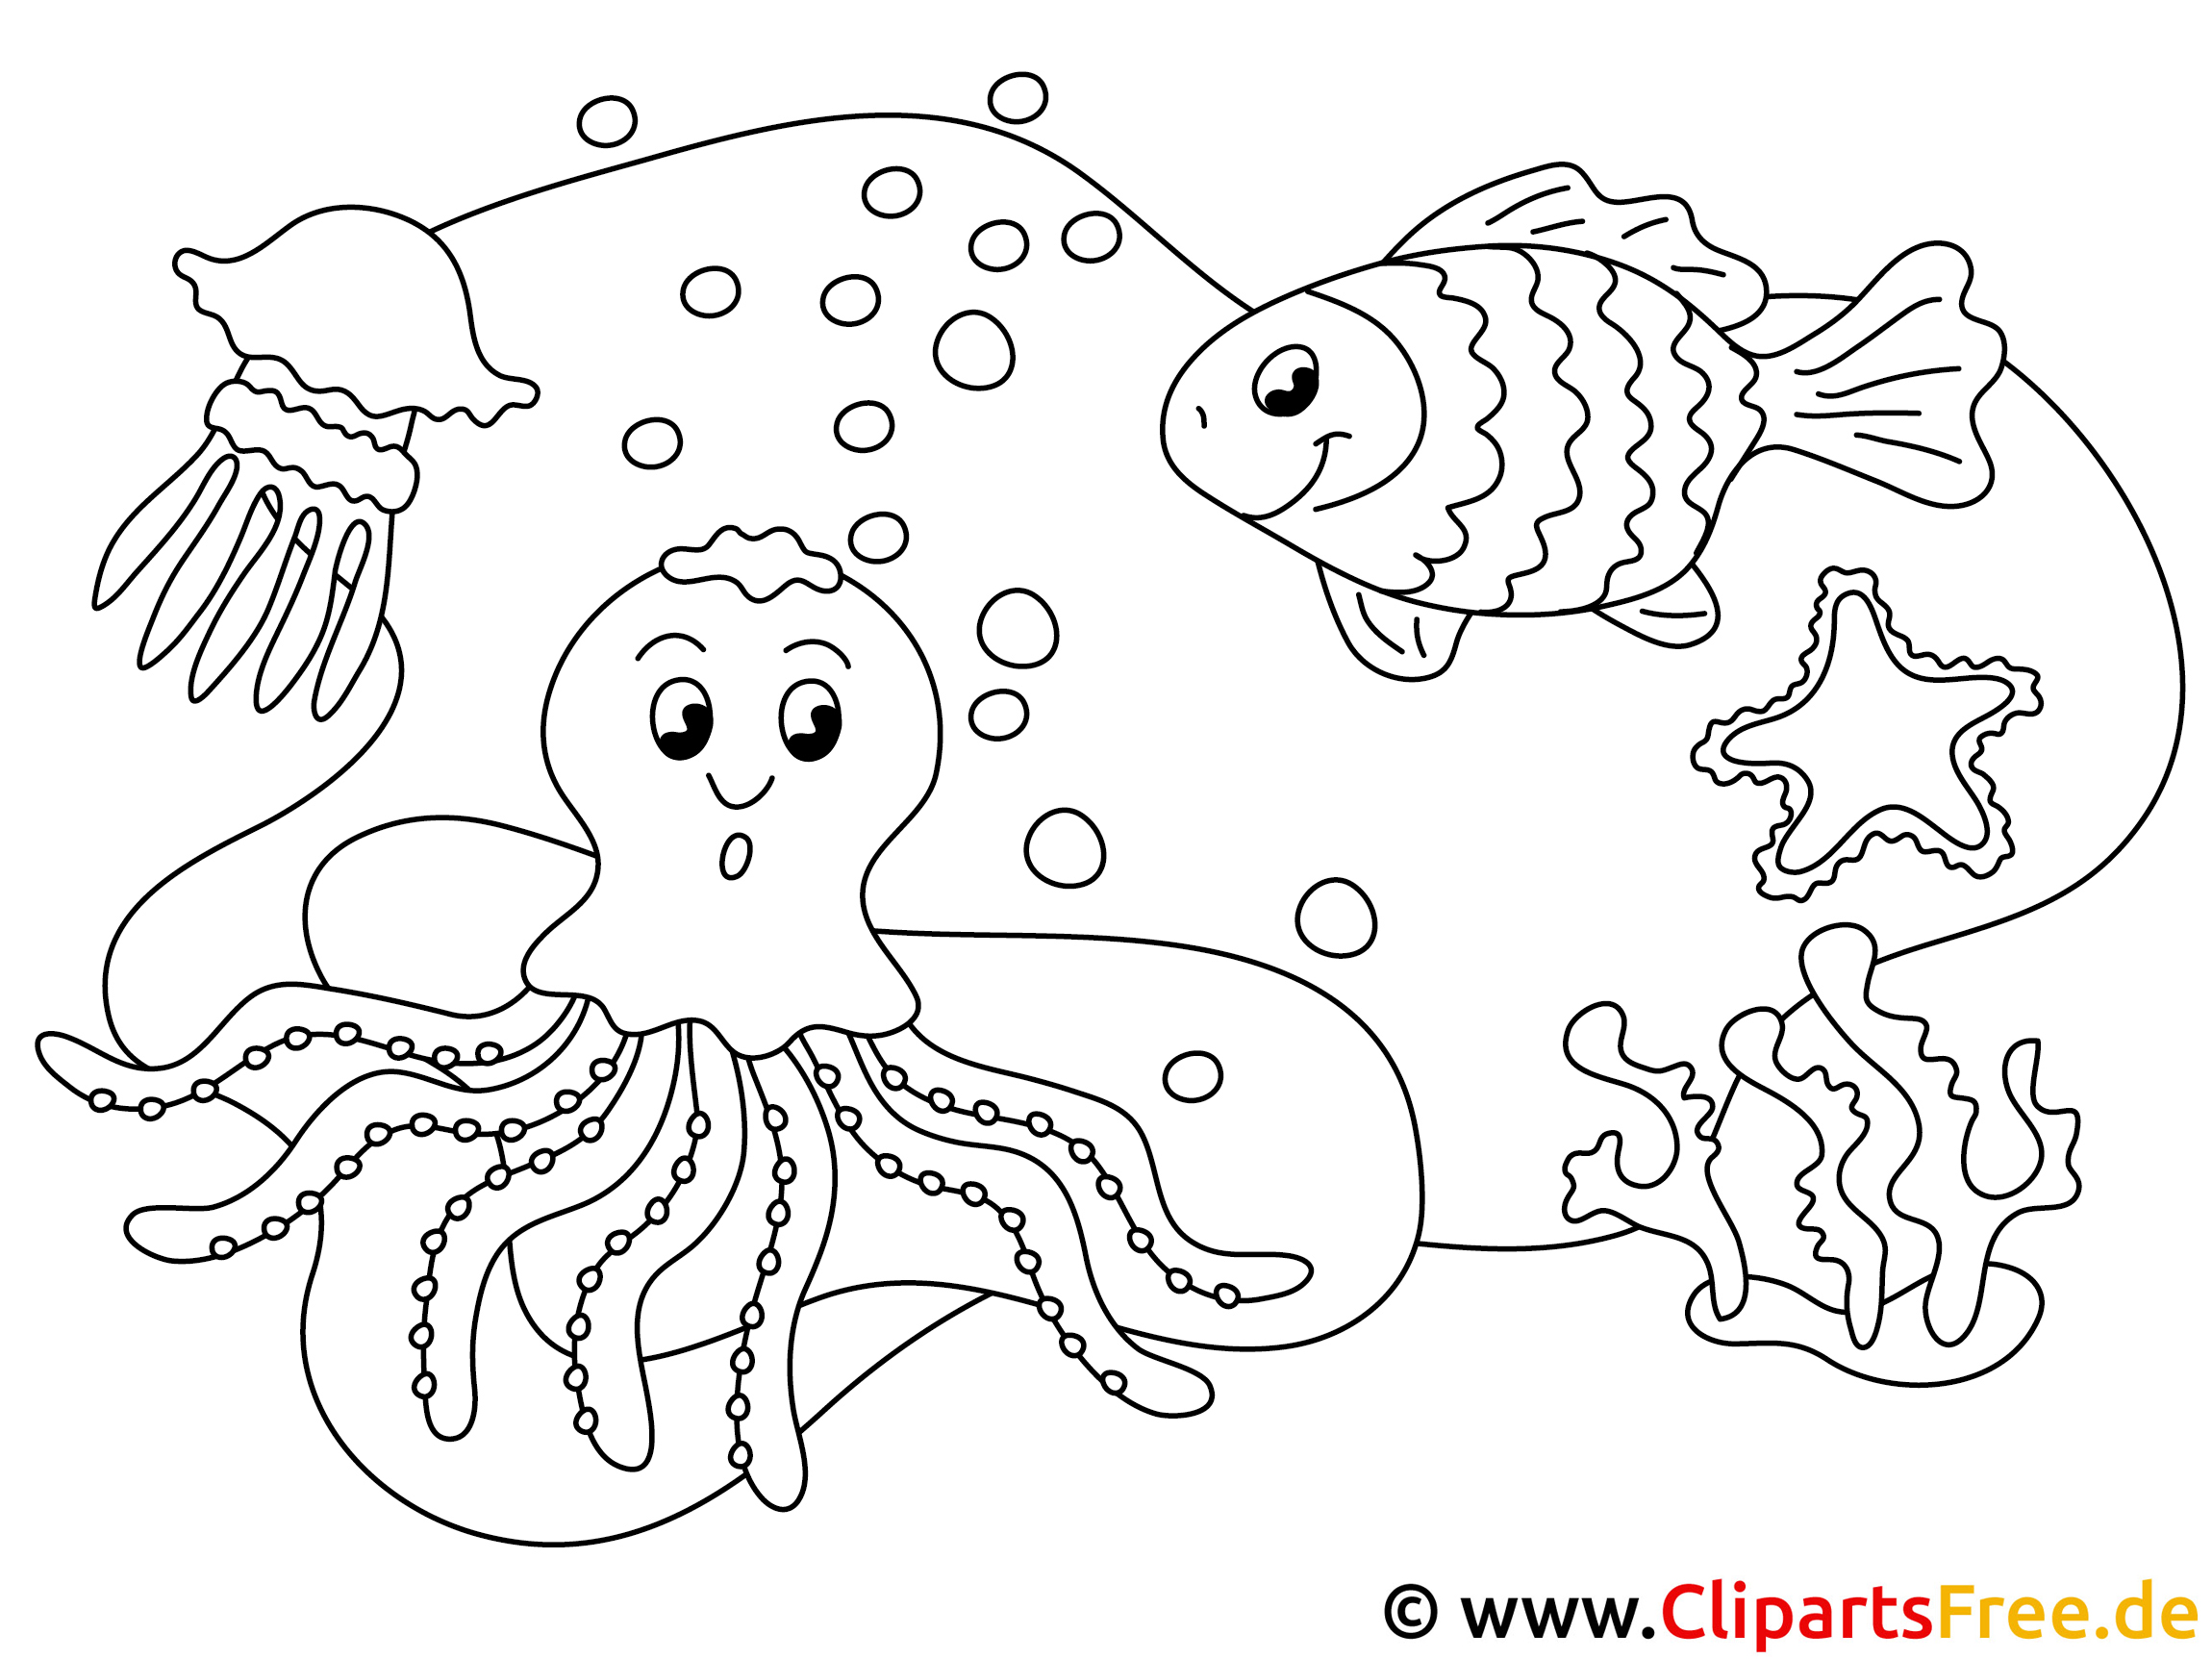 Dibujos de animales marinos para colorear